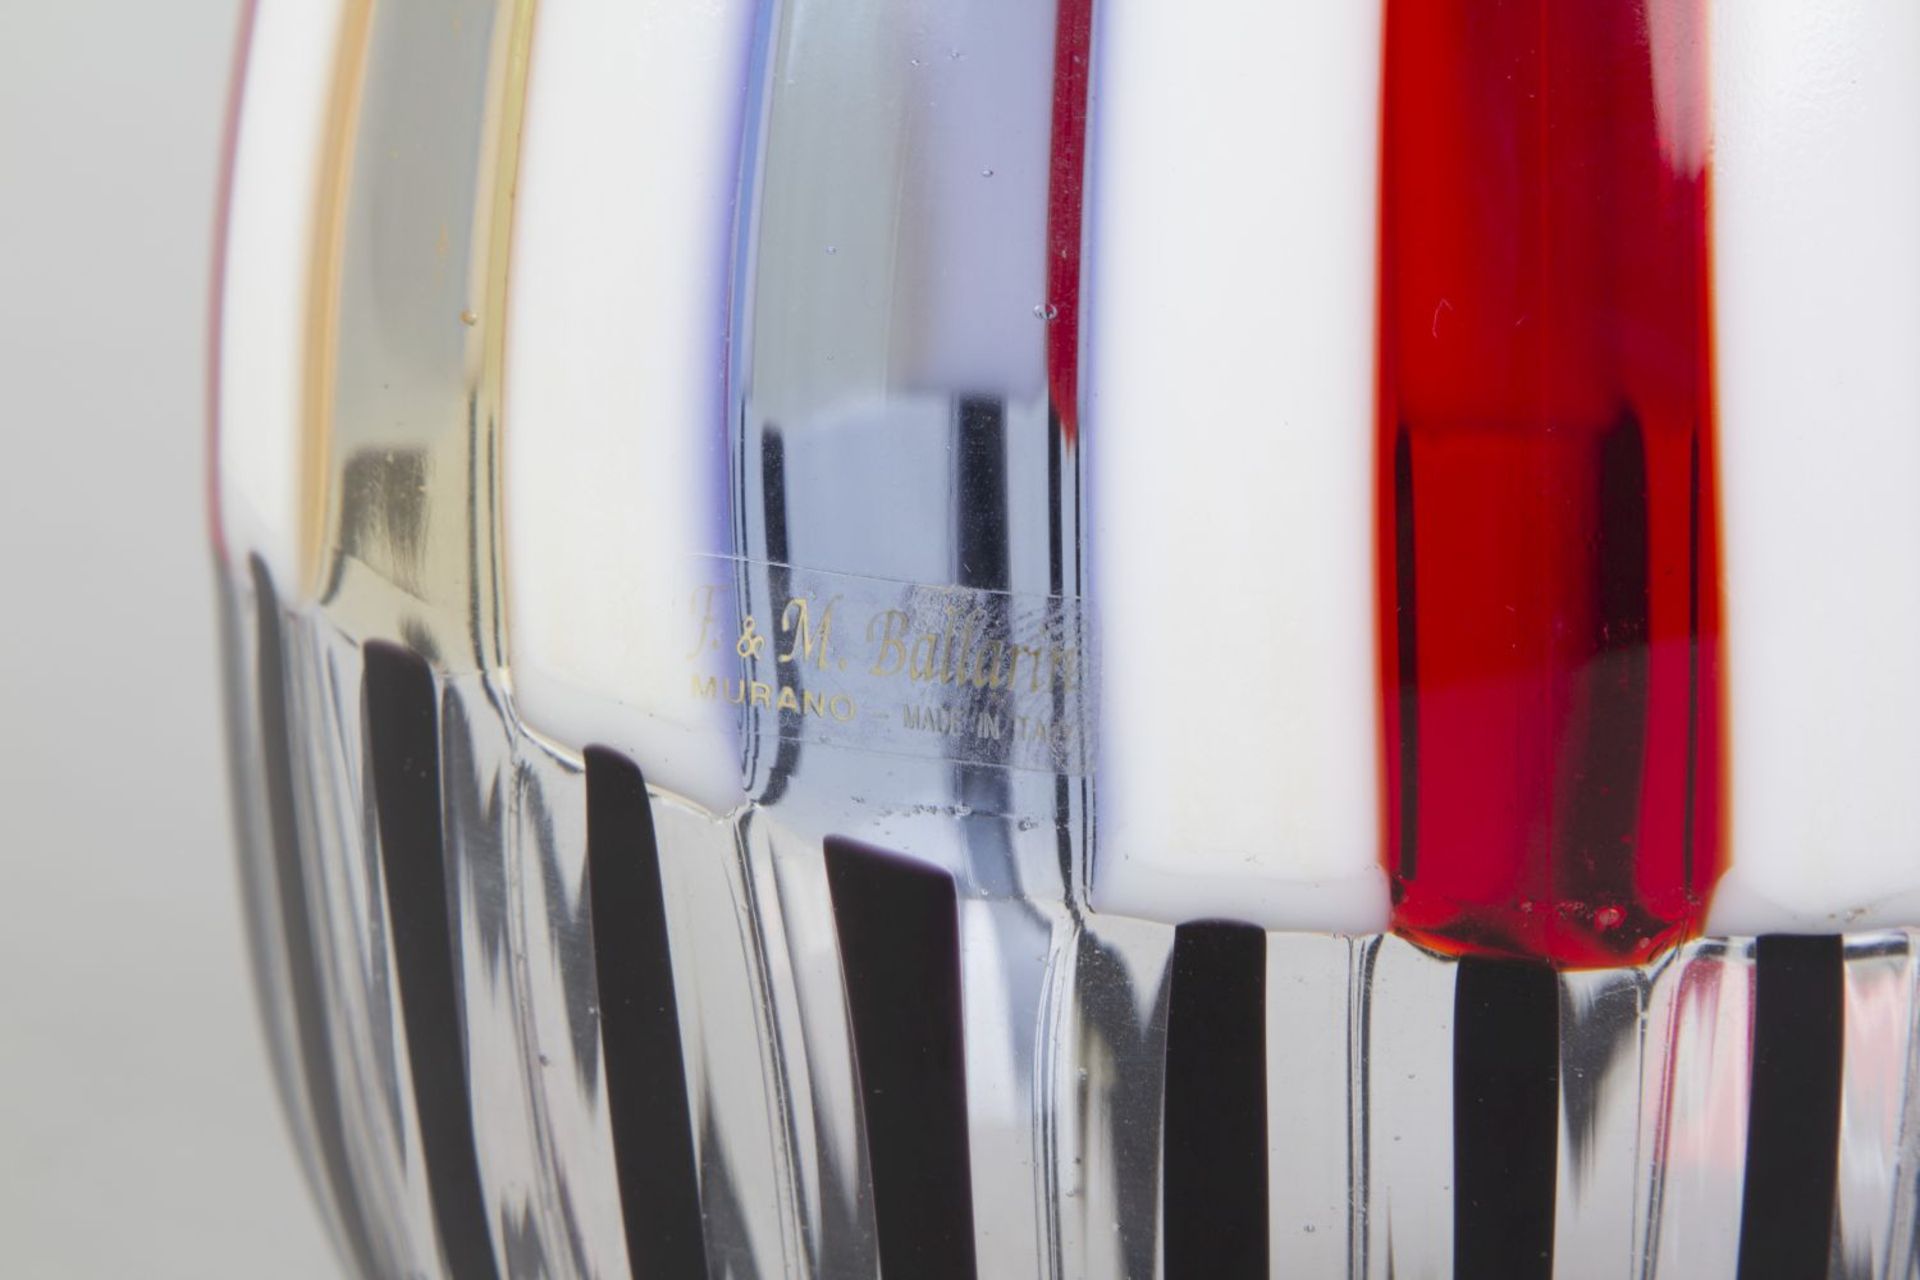 Murano-Vase Farbloses Glas. Eingeschmolzene Längsstreifen in Weiß, Gelb, Rot und Blau sowie Schwarz. - Bild 2 aus 2